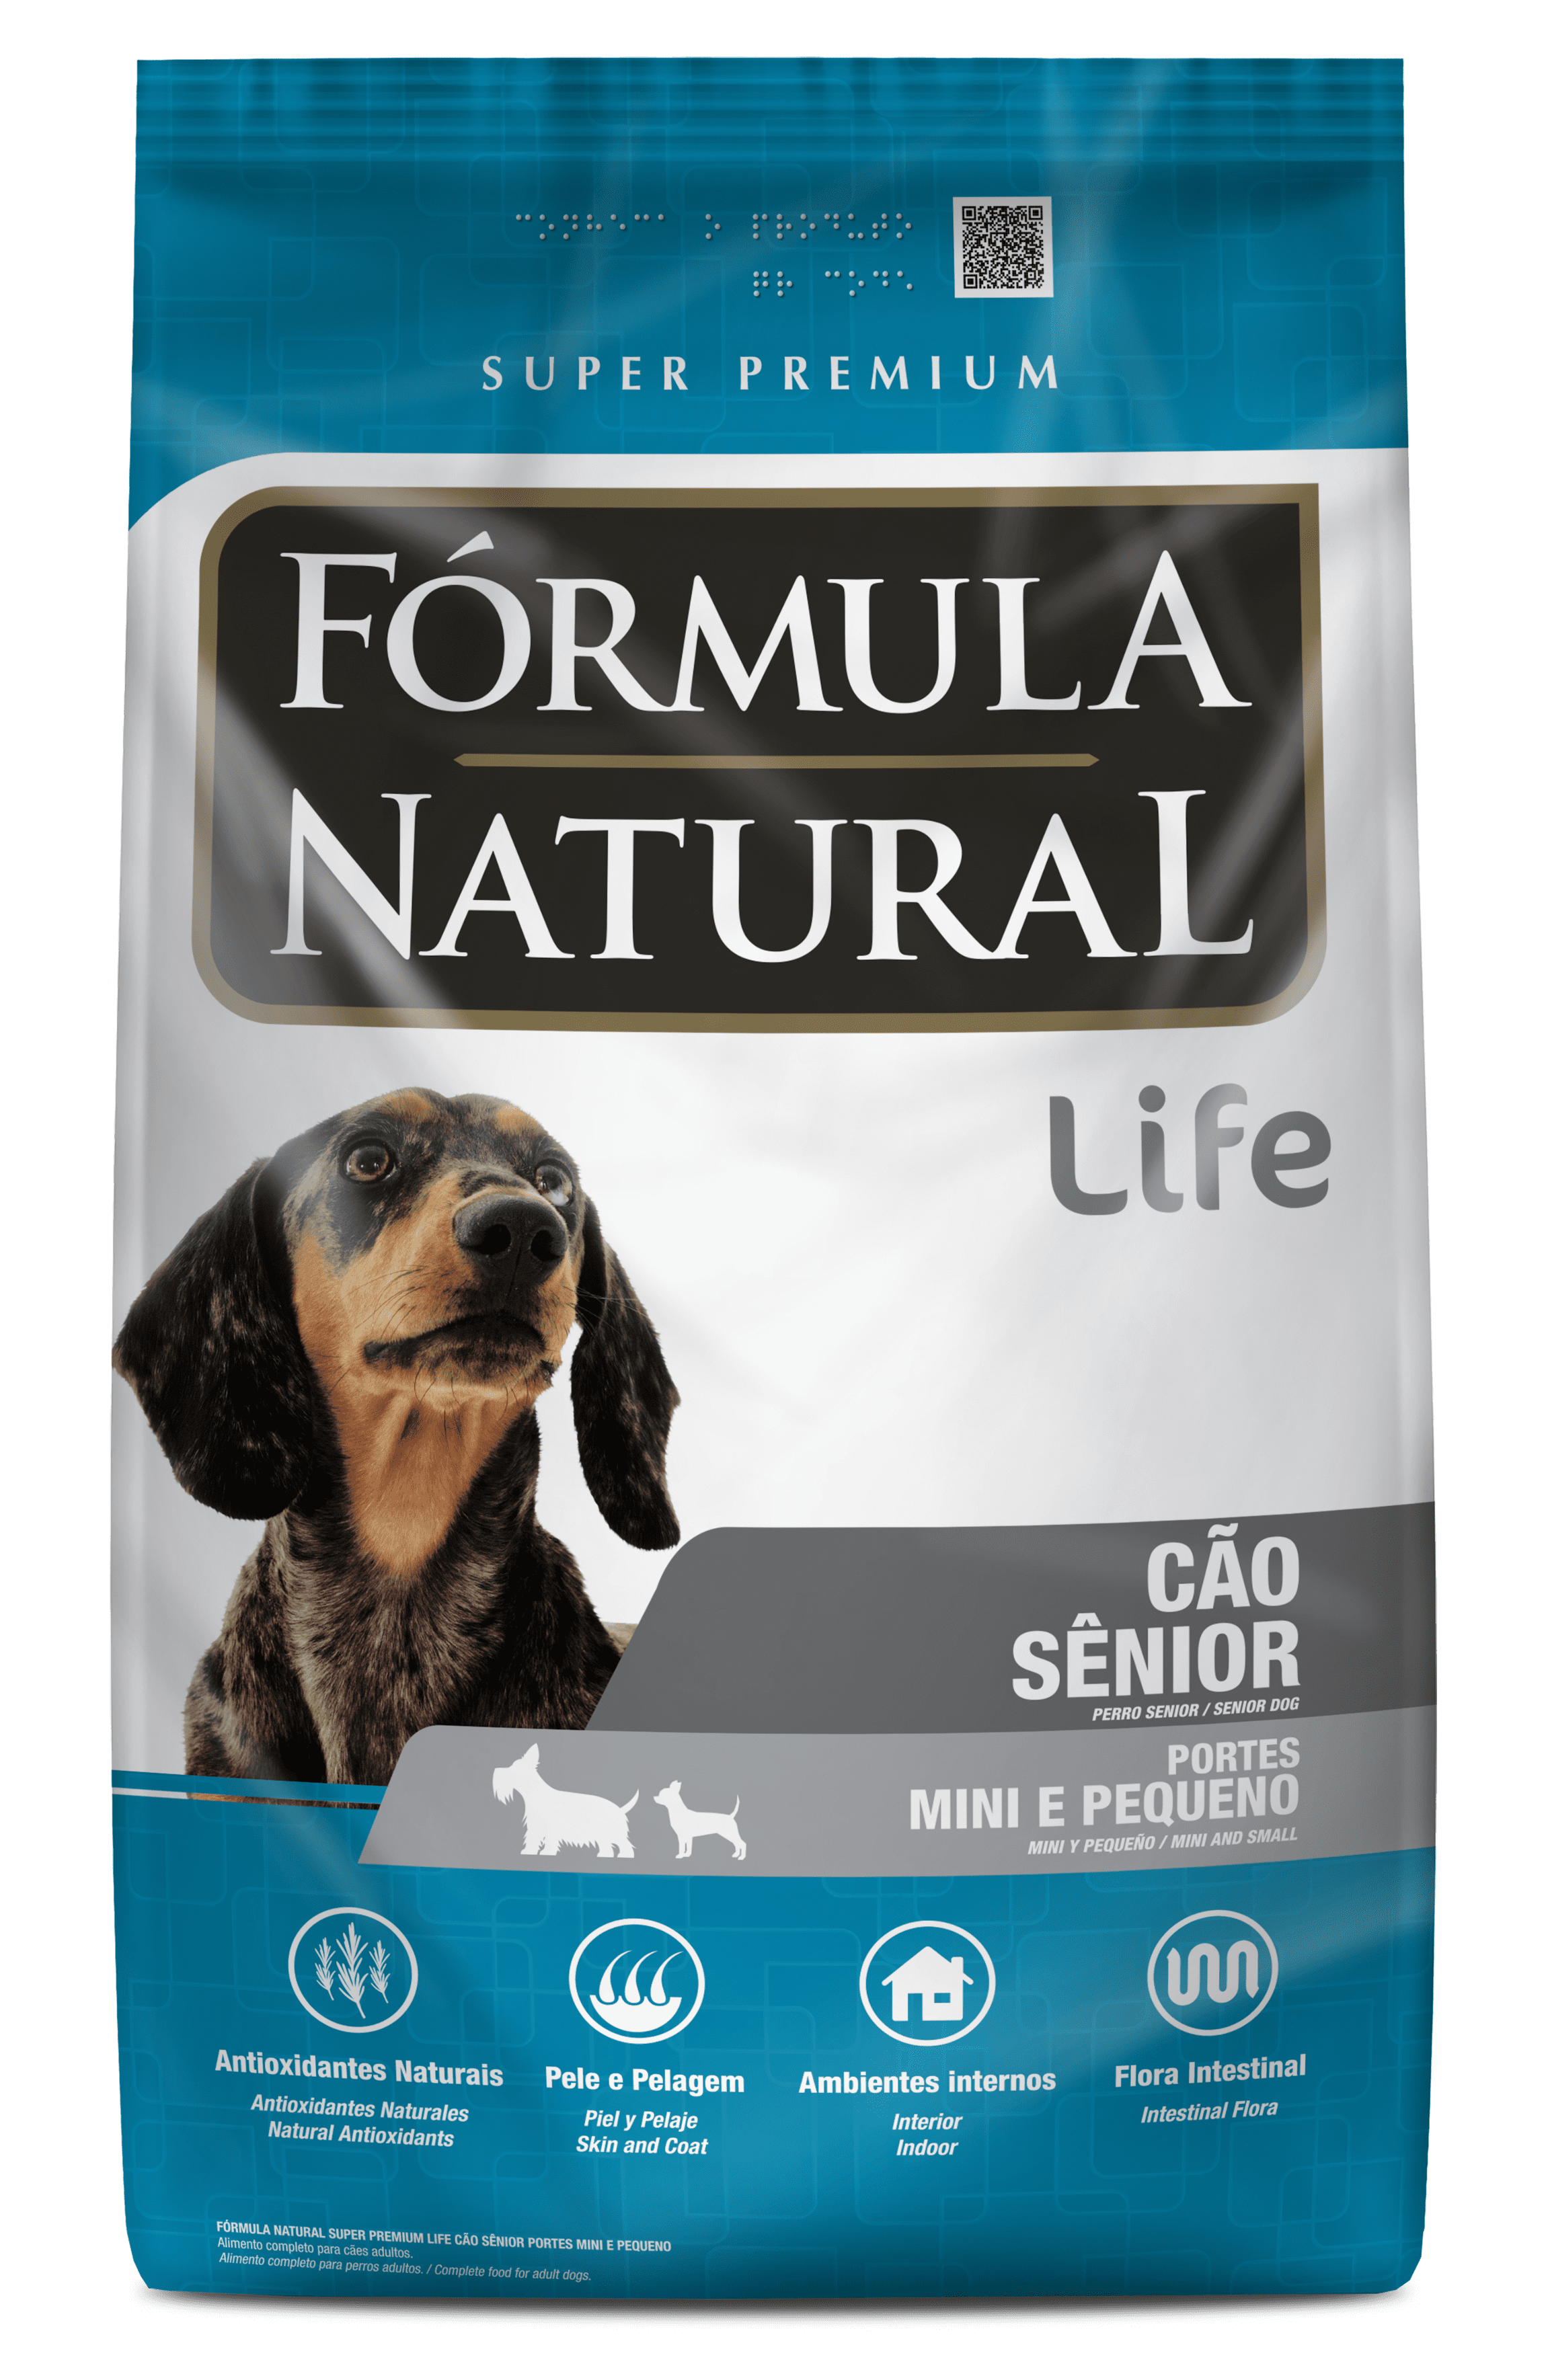 Fórmula Natural Super Premium Life Cães Sênior Portes Mini e Pequeno